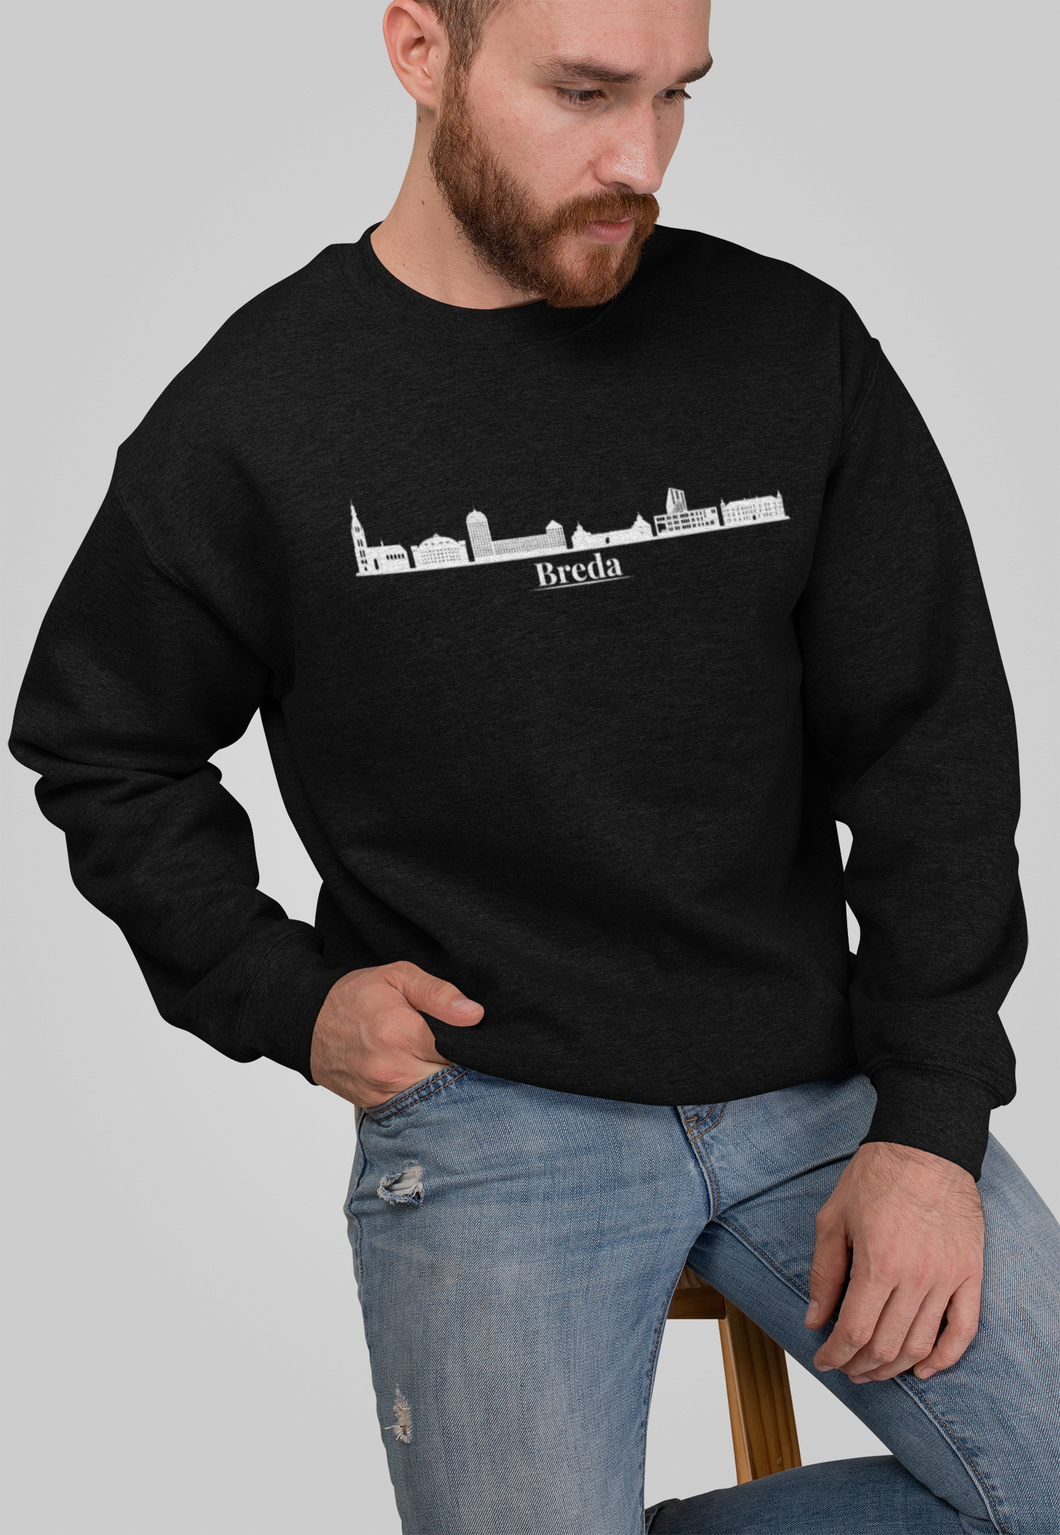 Breda skyline sweater